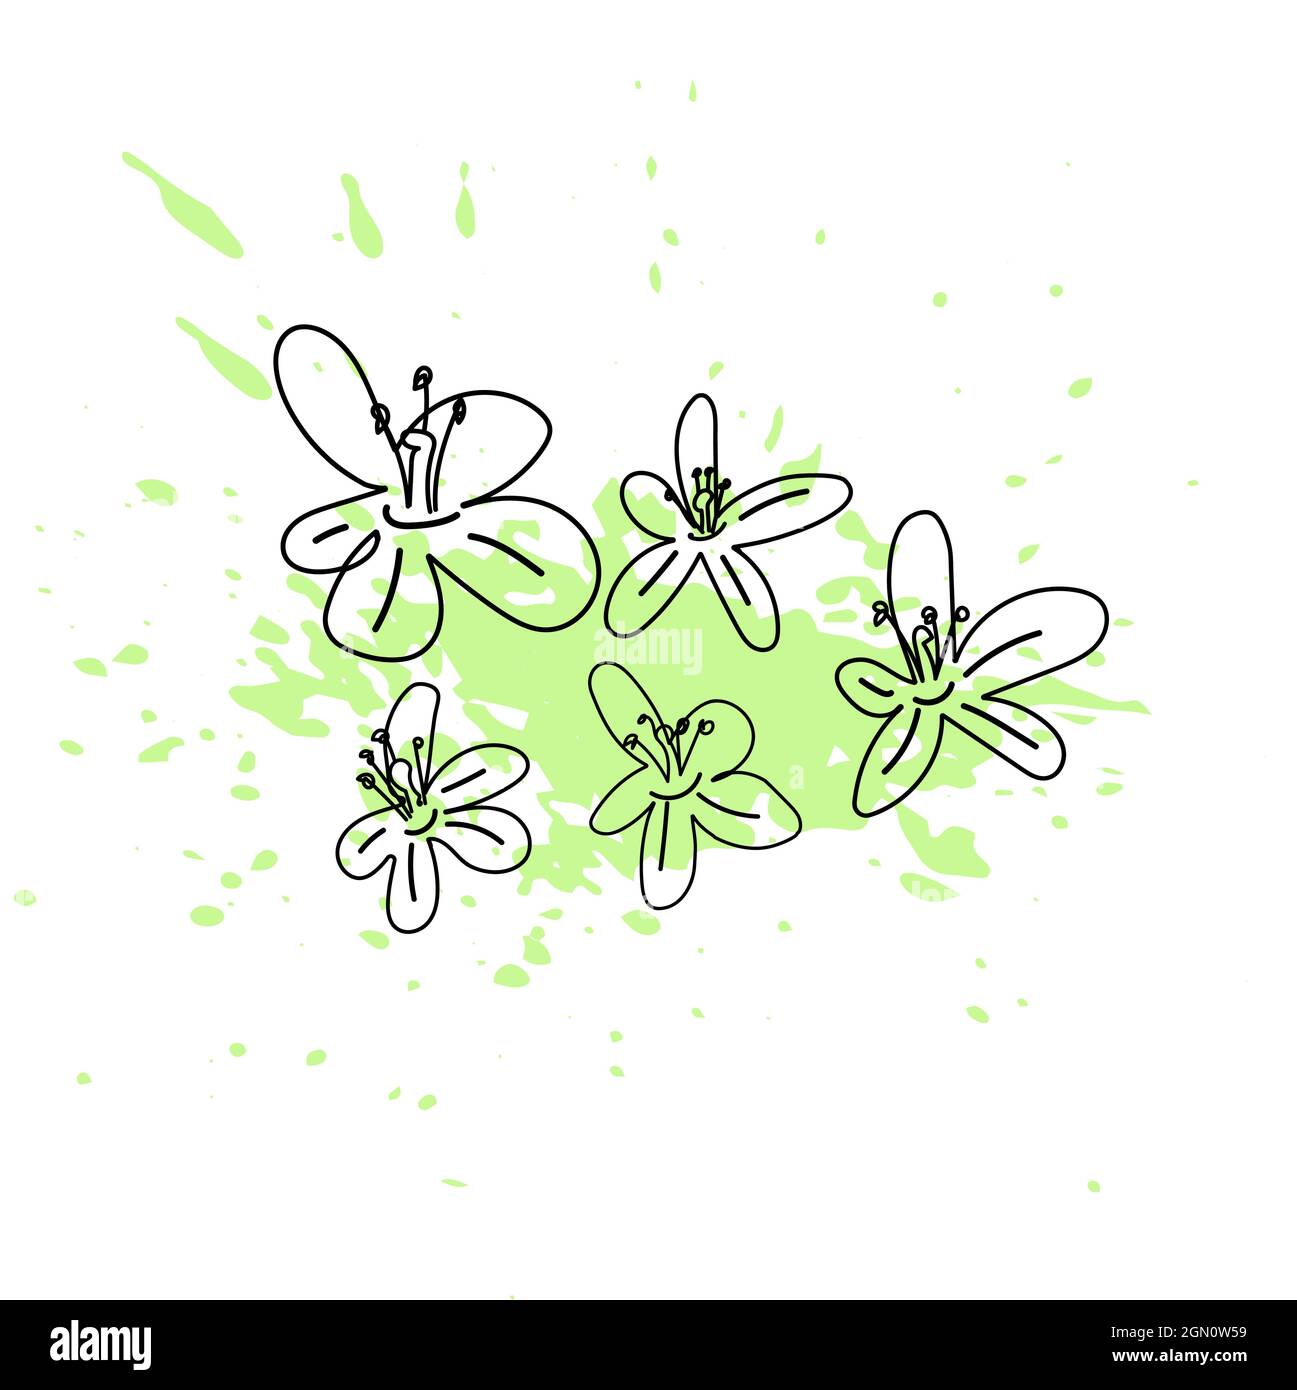 Vektor-Illustration von Apfelbaum Blumen mit grüner Farbe Spritzer. Linienkunst. Stock Vektor